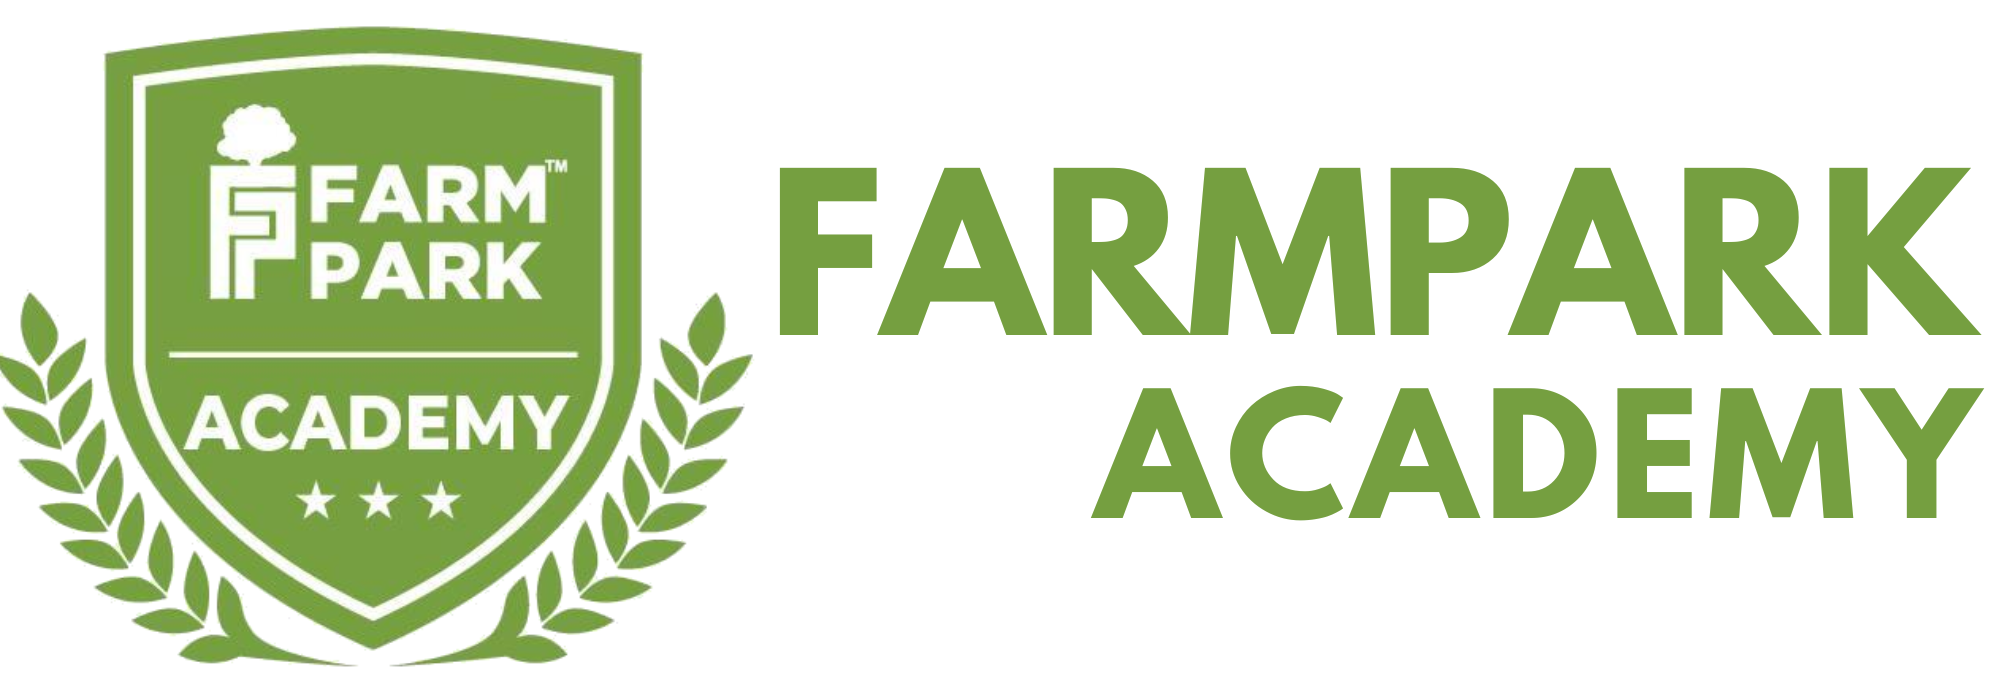 Farmpark Academy